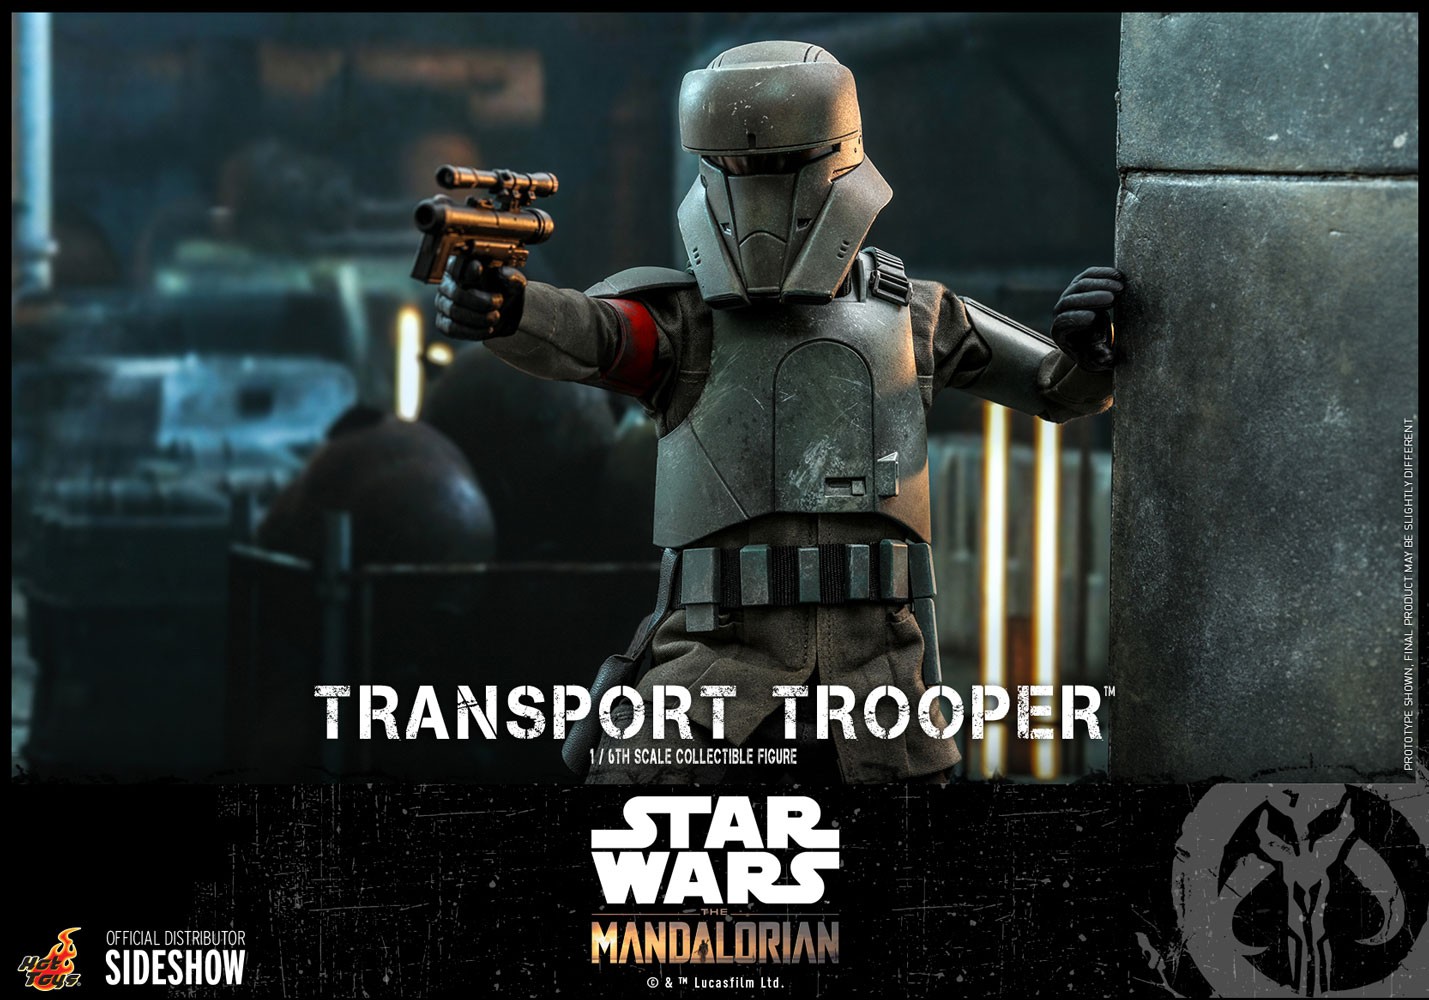 Transport Trooper™